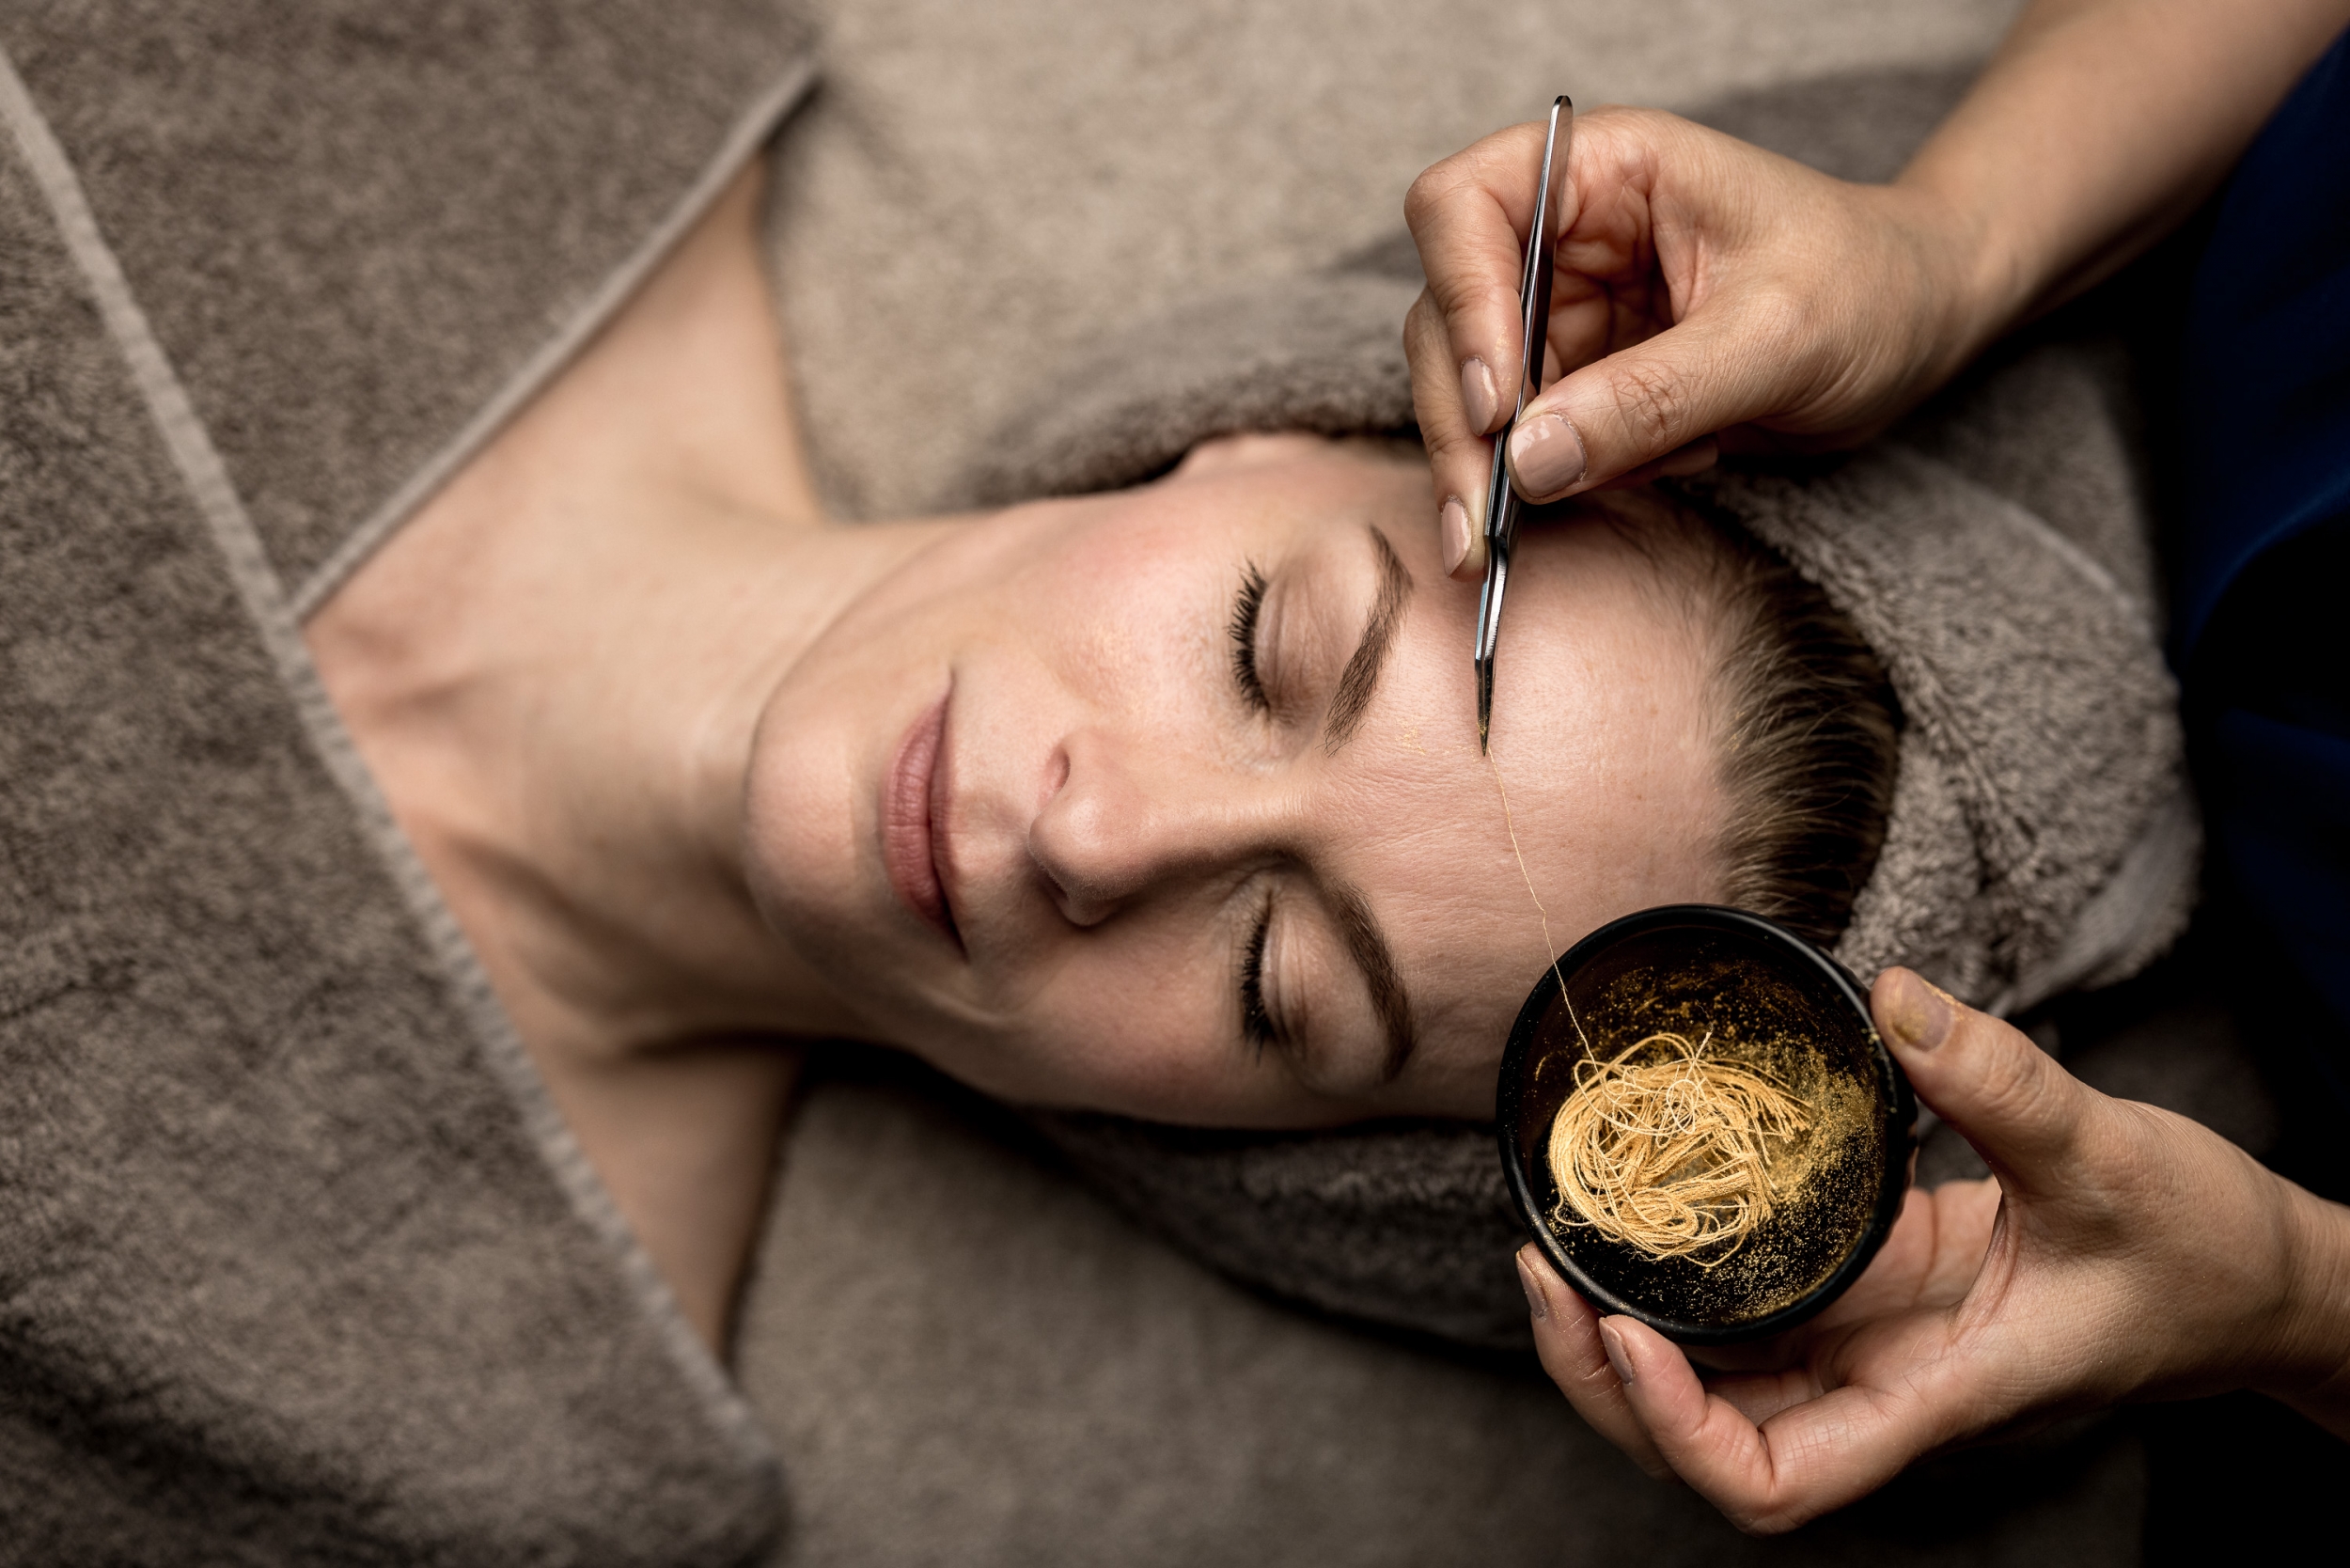 Gesichtsbehandlung mit Goldfäden - Summit Beauty & Massage im Hotel Das Central in Sölden